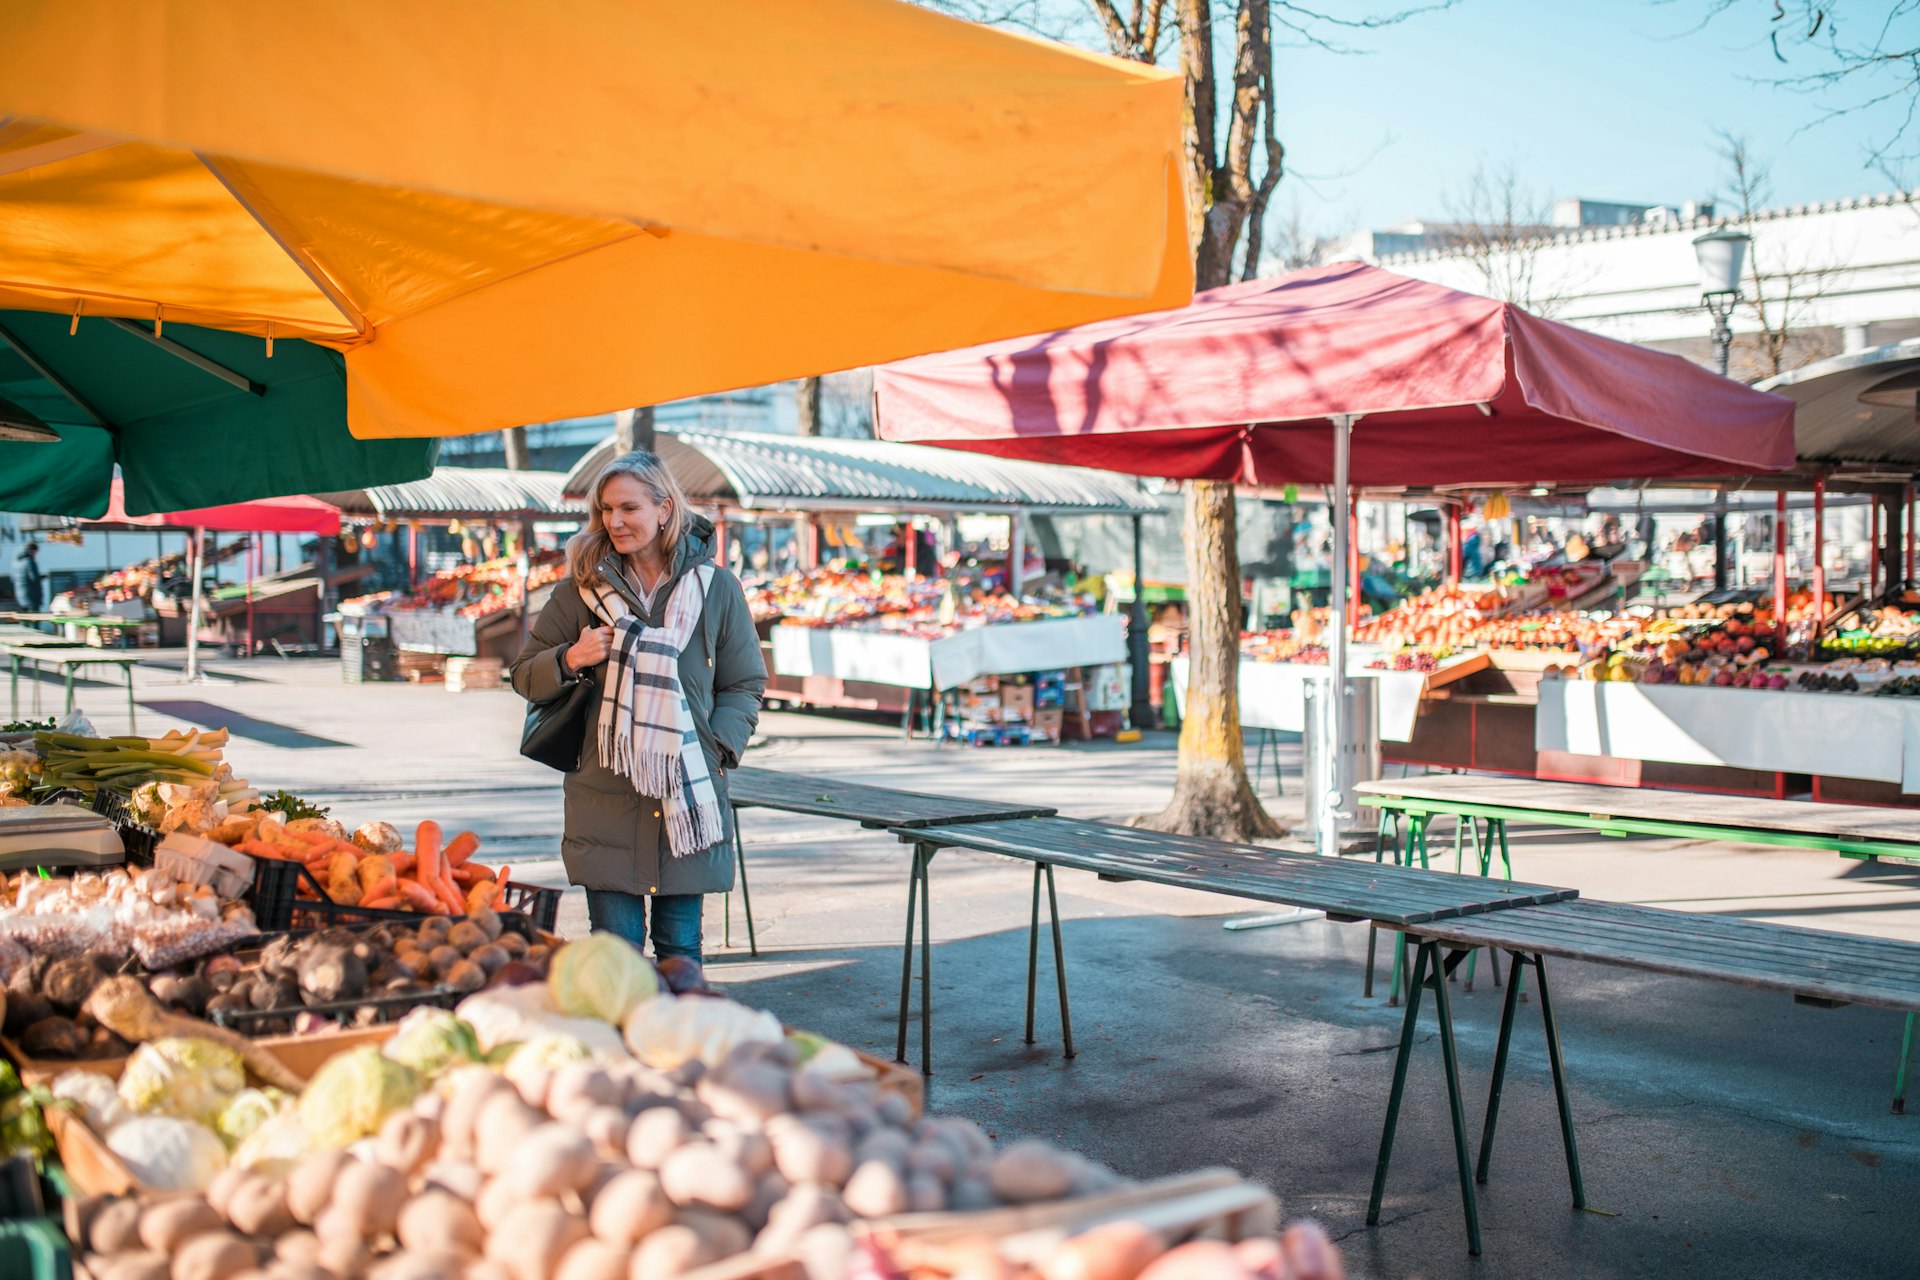 The outdoor market in Ljubljana, Slovenia